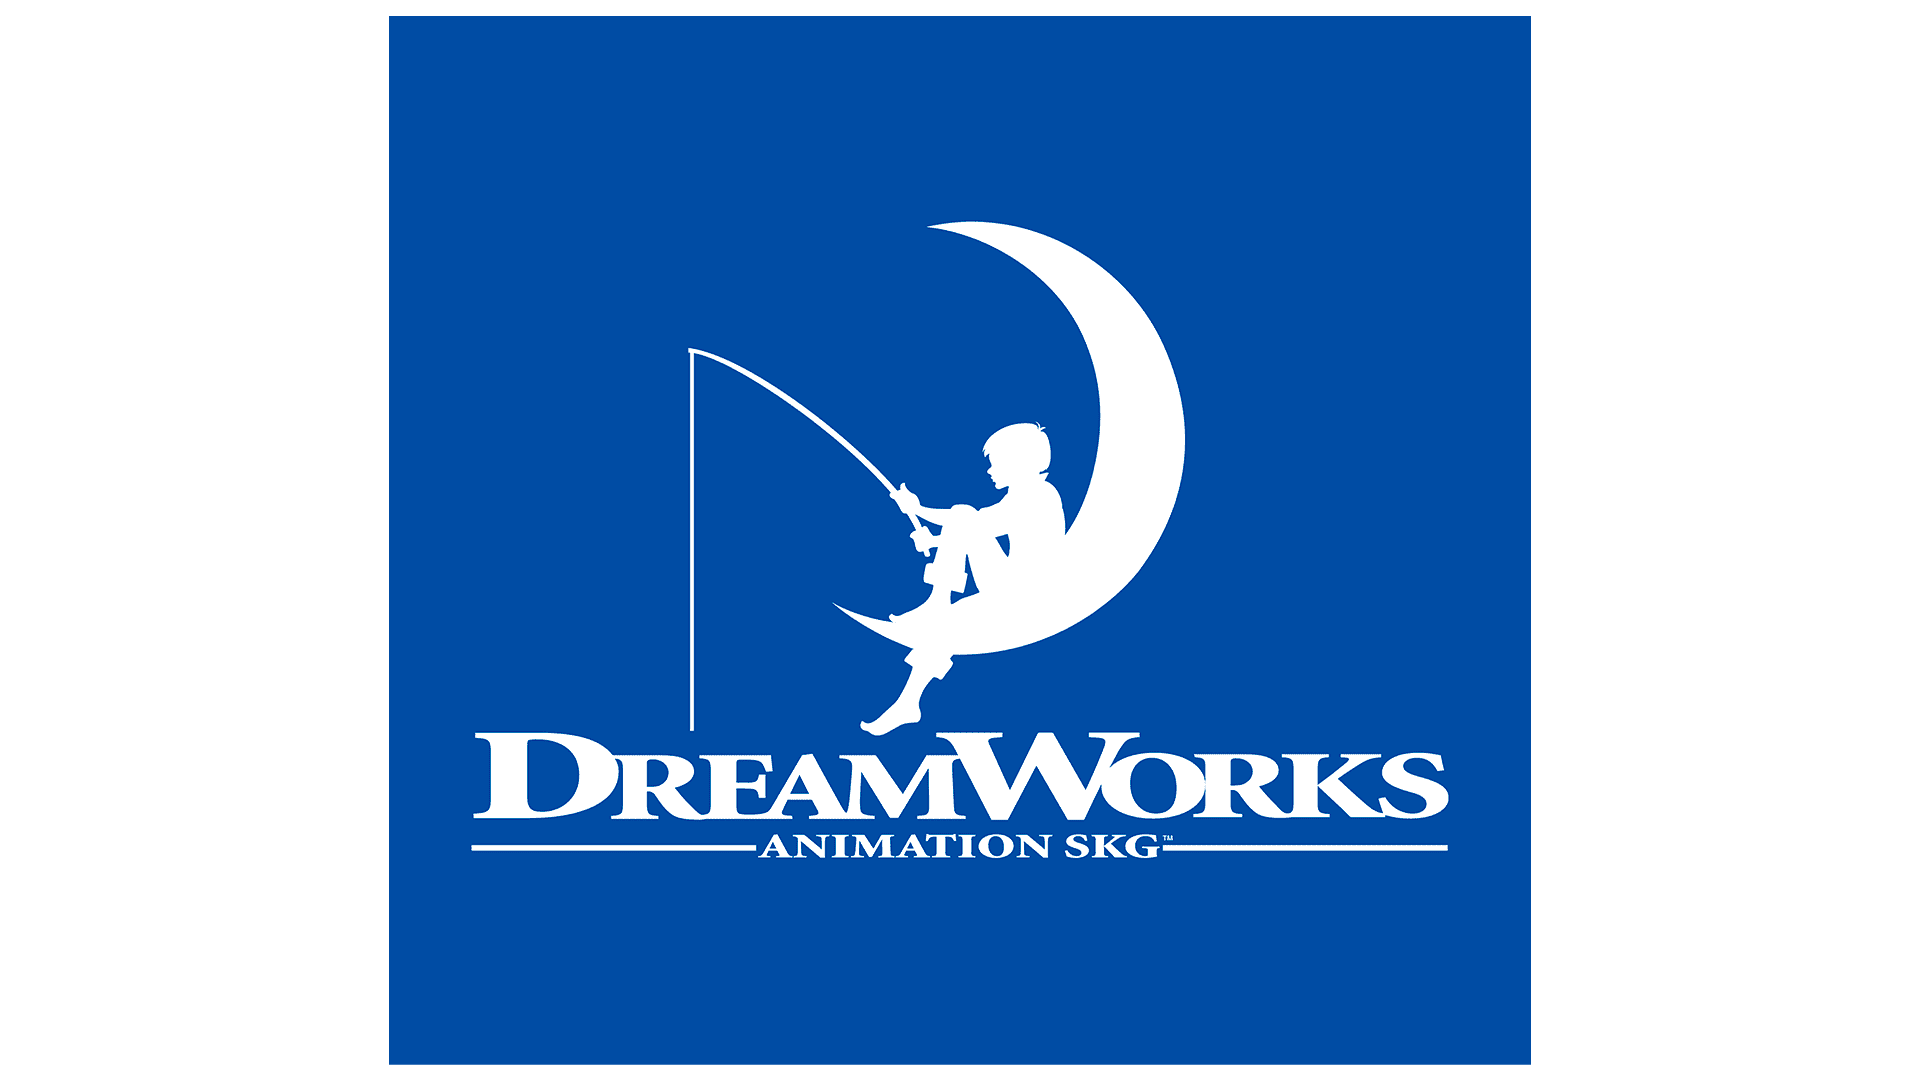 Dreamworks animation skg logo. Эмблема Дримворкс. Студия Дримворкс. Компания Dreamworks. Киностудия Дримворкс.